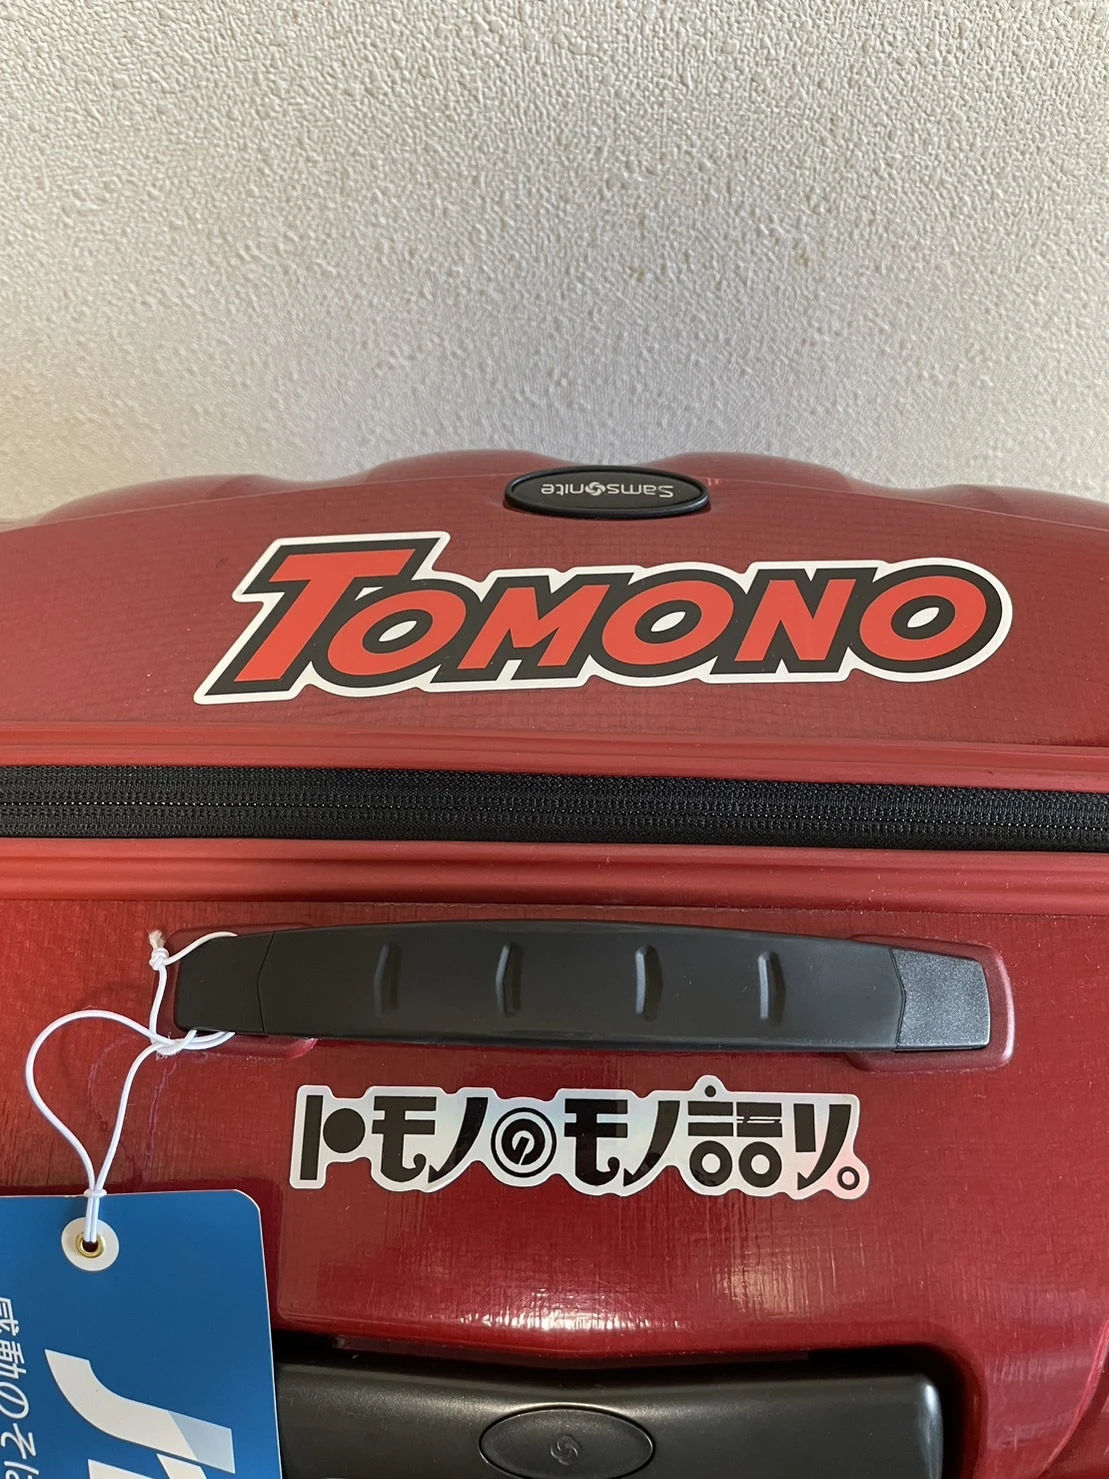 友野一希さんのスーツケースに貼ってある「トモノのモノ語り。」のステッカー